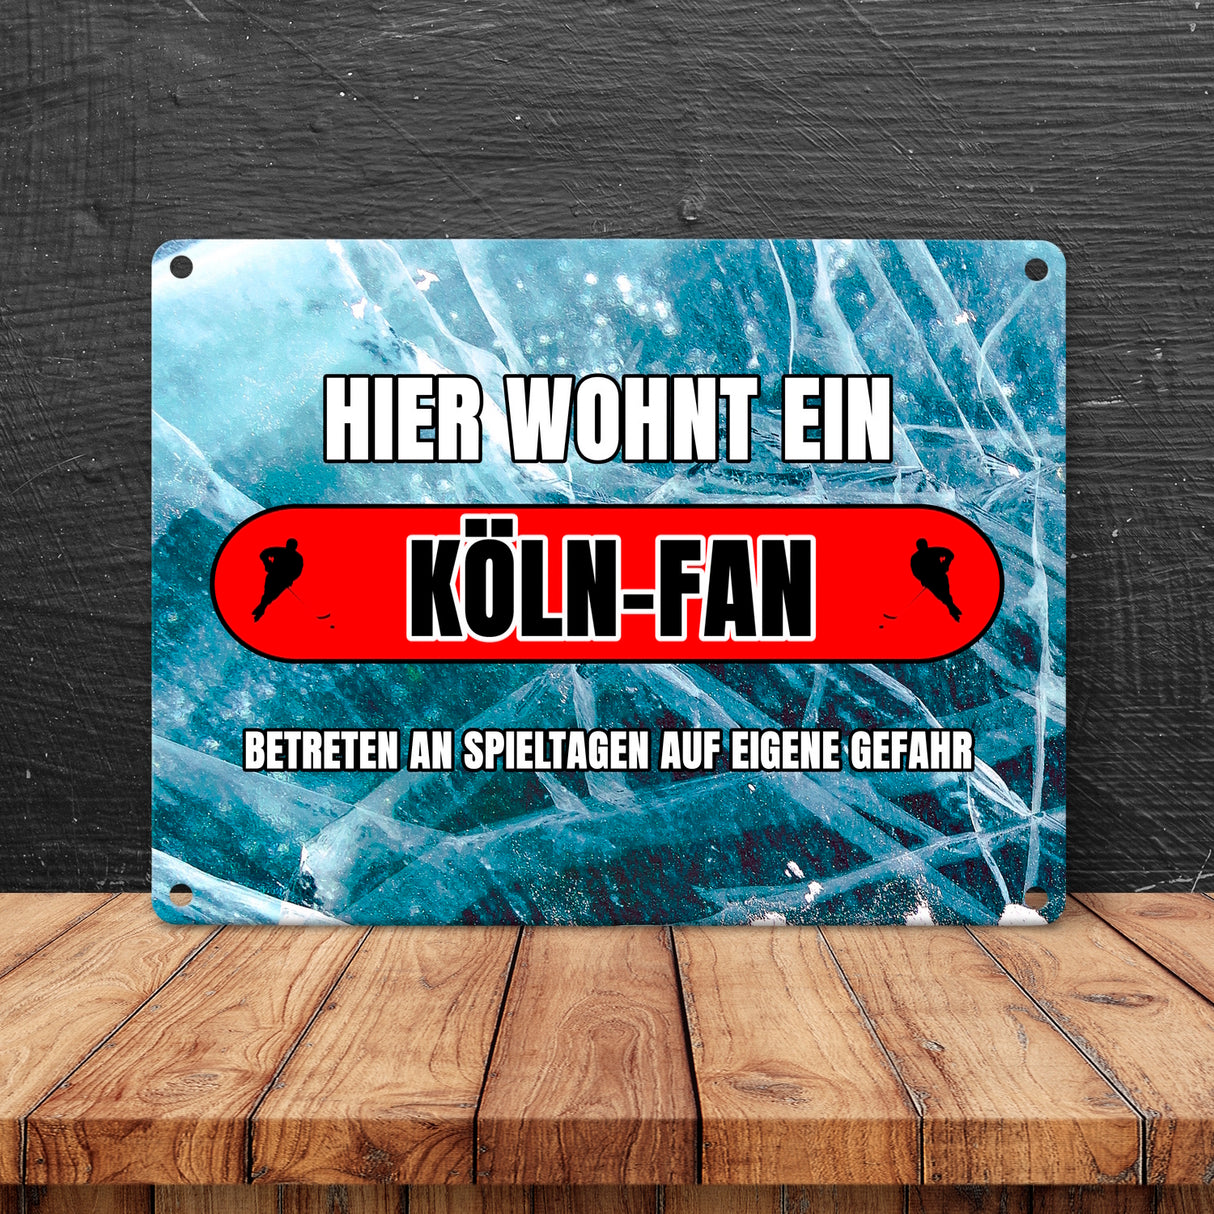 Hier wohnt ein Köln-Fan Metallschild in 15x20 cm mit Eishallen Boden-Motiv